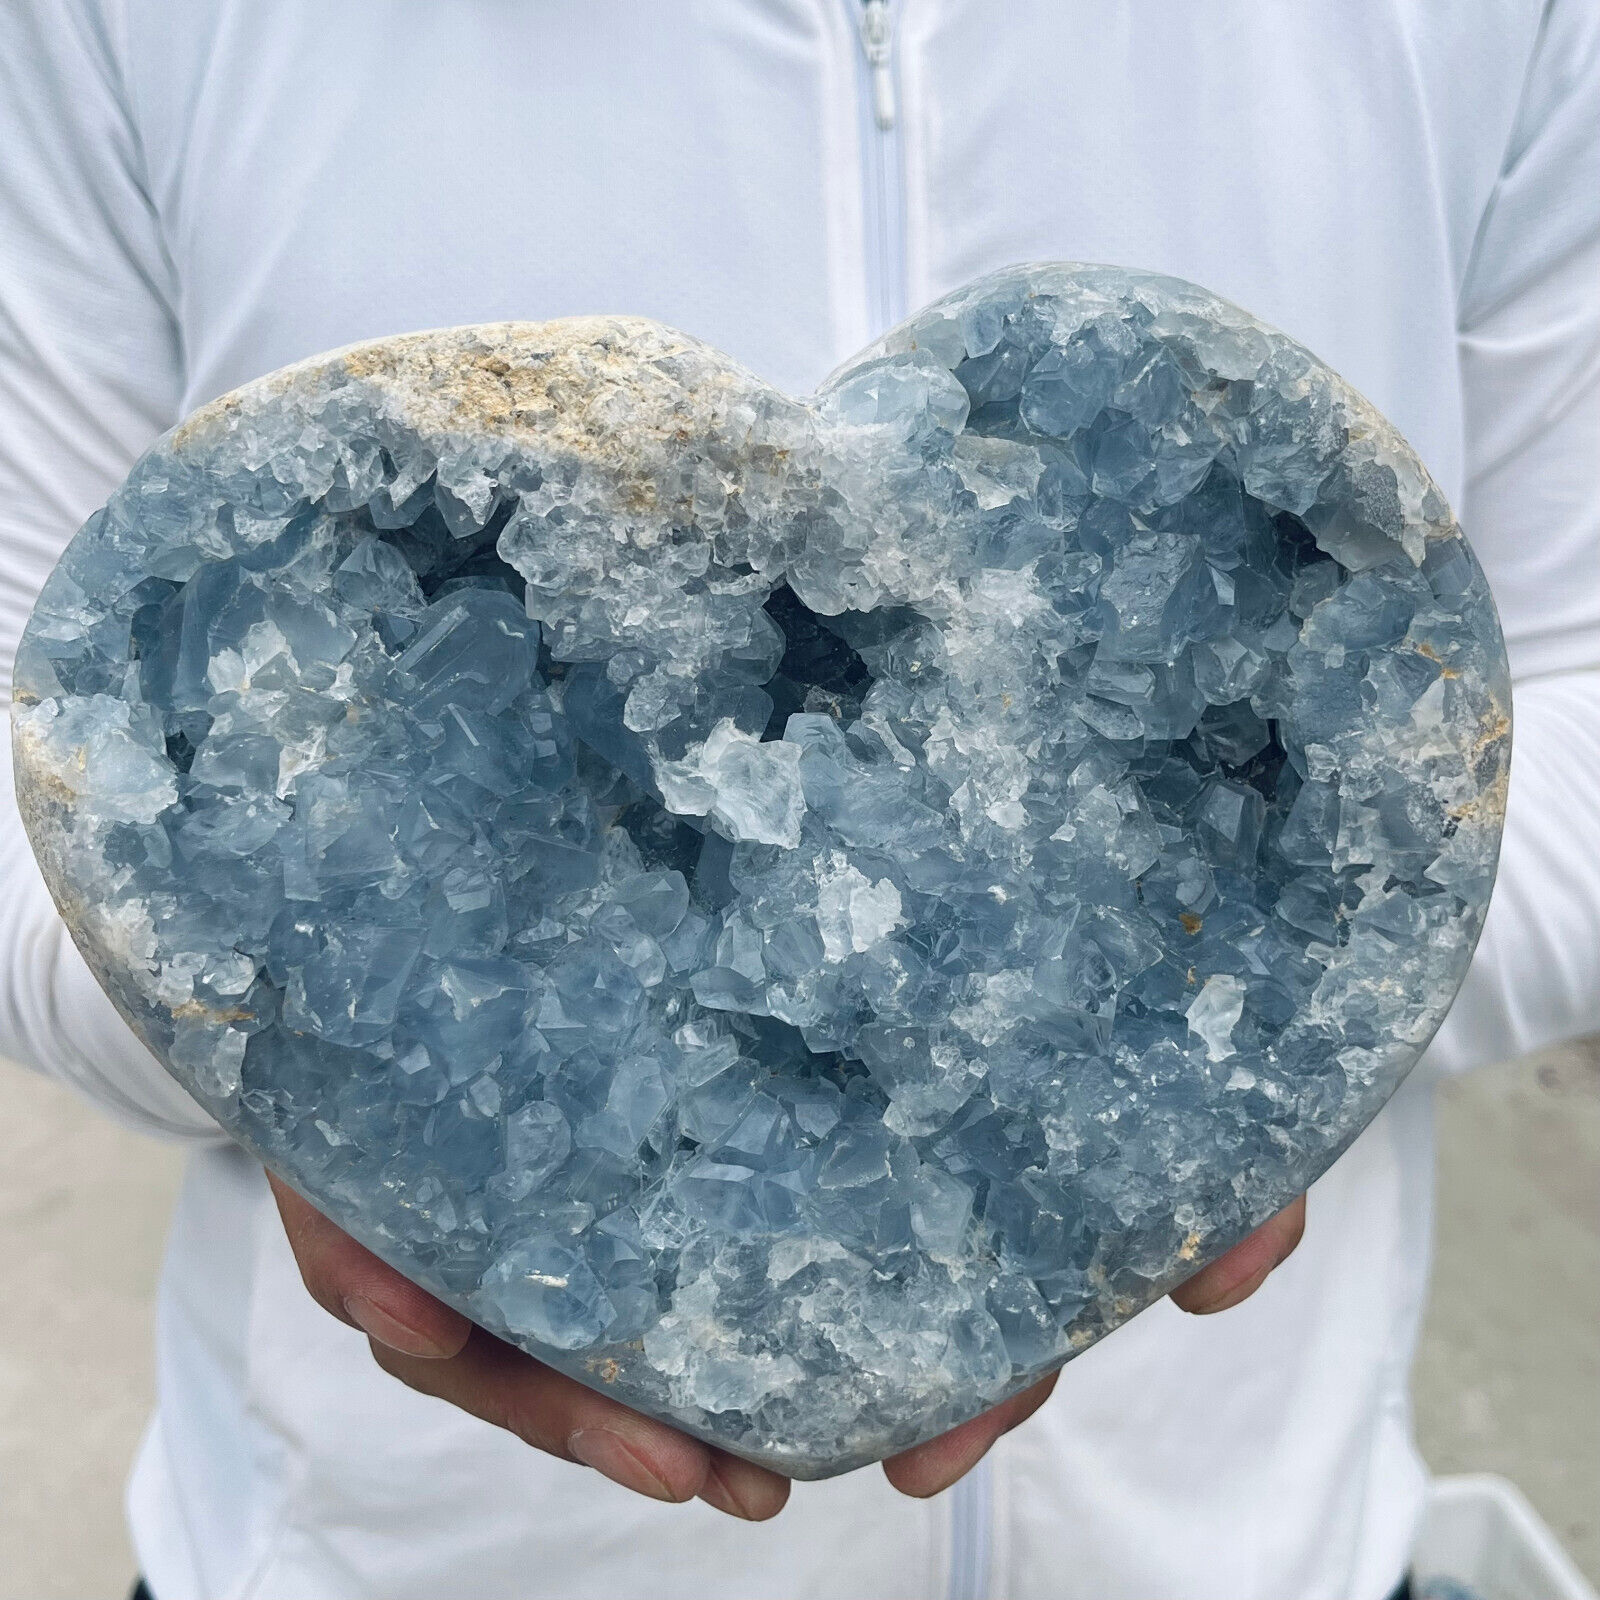 10.2lb Large Natural Blue Celestite Crystal Geode Quartz Cluster Mineral Specime